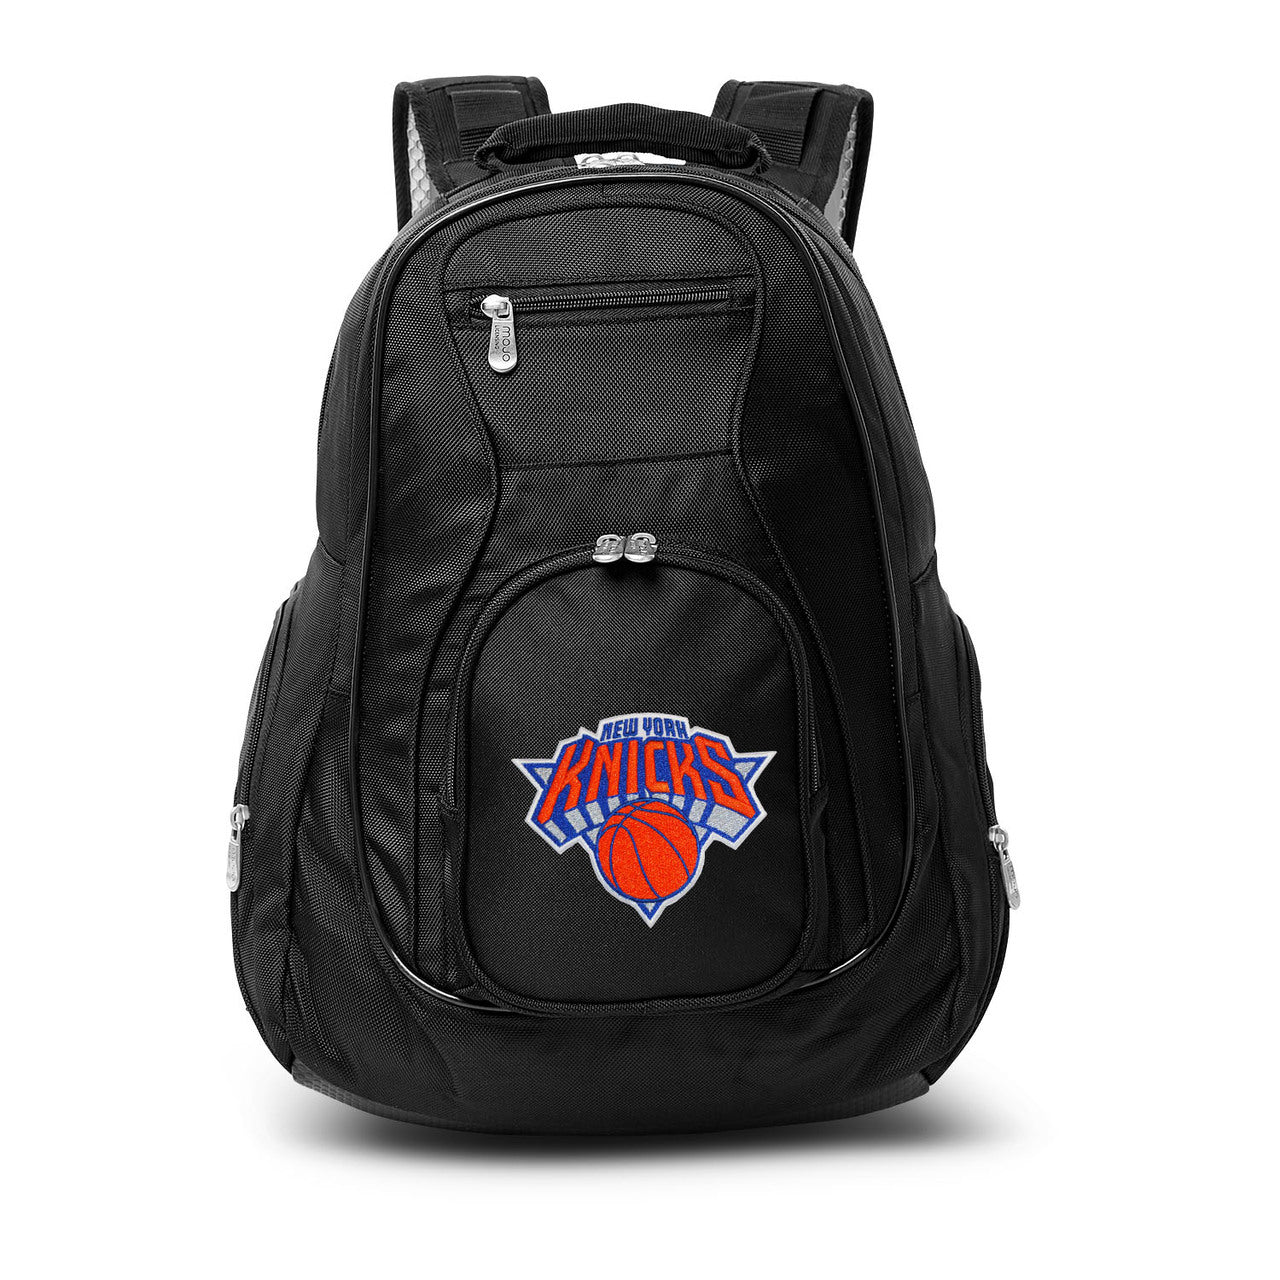 New York Knicks Laptop Backpack Black